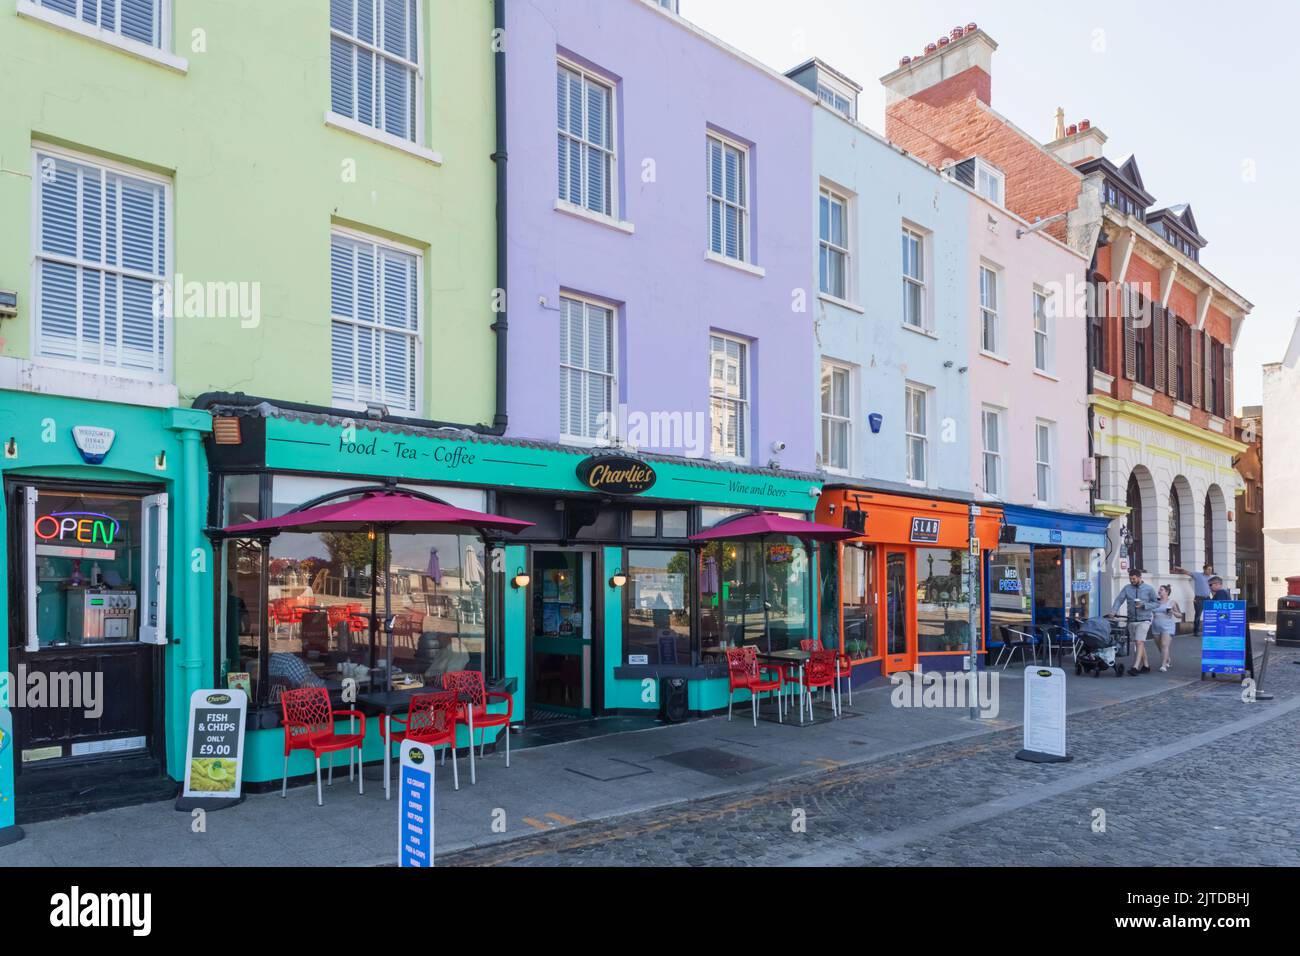 Angleterre, Kent, Margate, Old Town cafés et restaurants colorés en bord de mer Banque D'Images